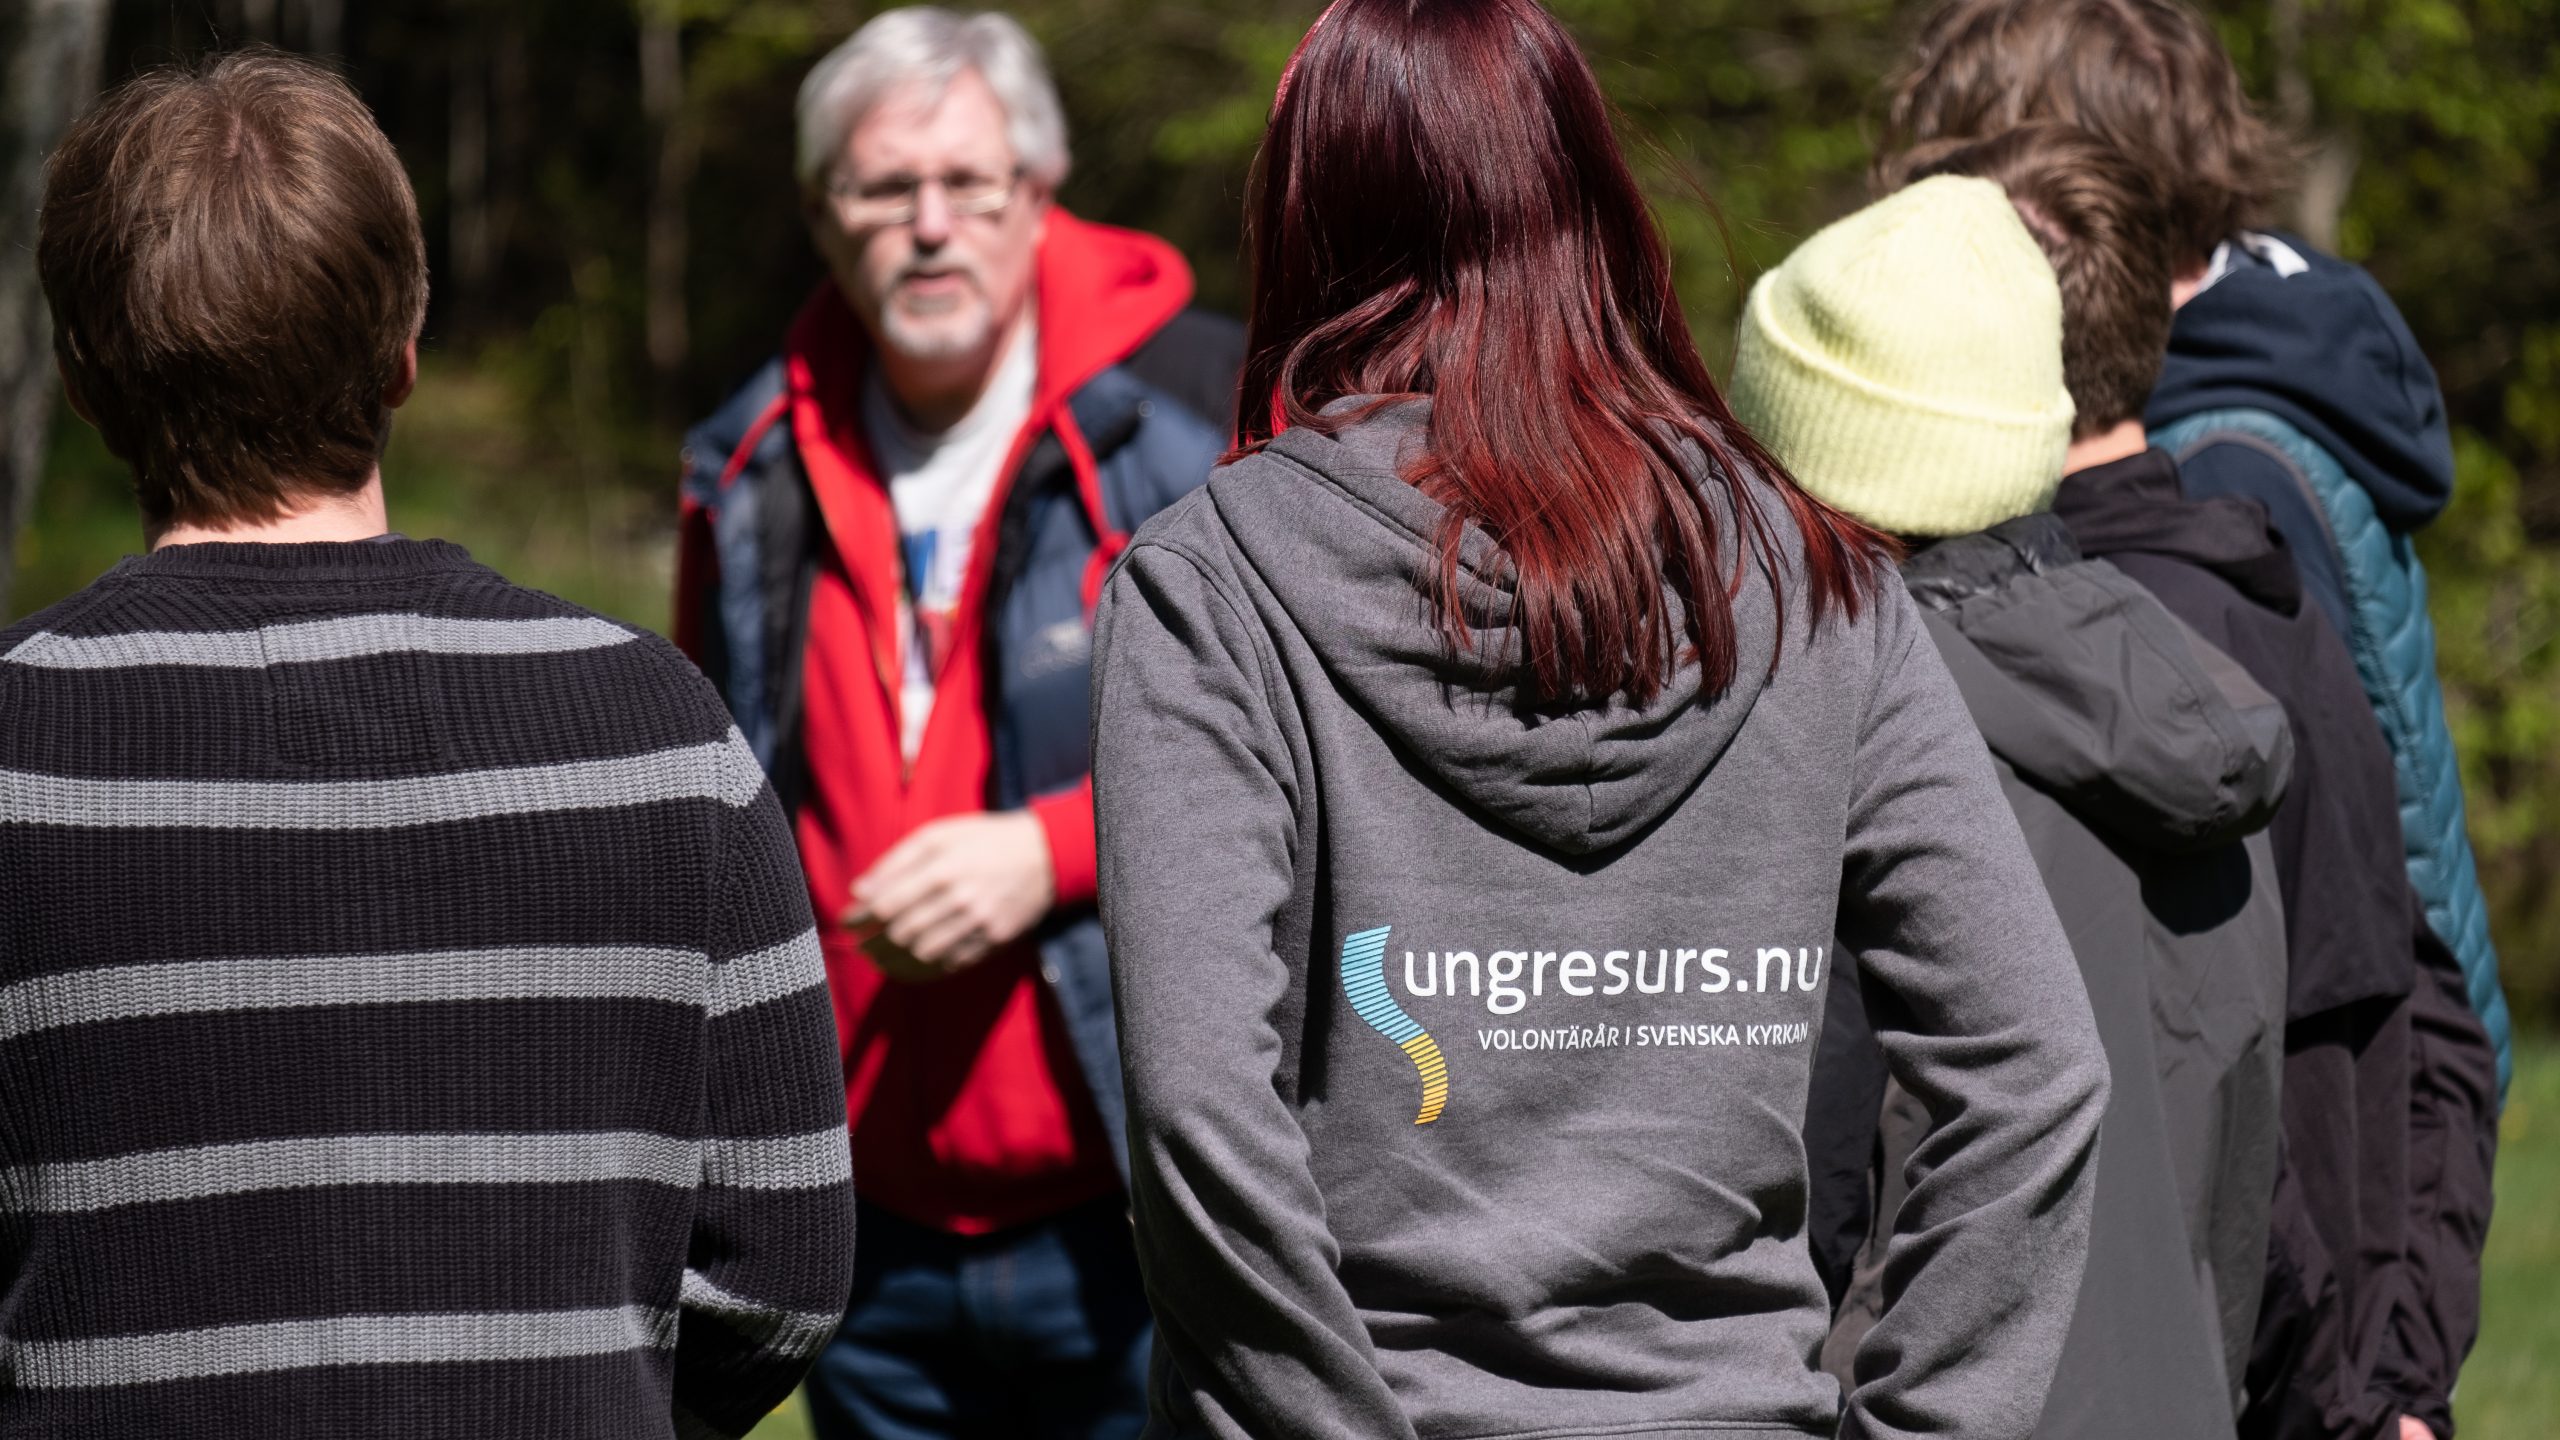 Några personer står och pratar, en person har en tröja med texten "Ung resurs" på ryggen. 